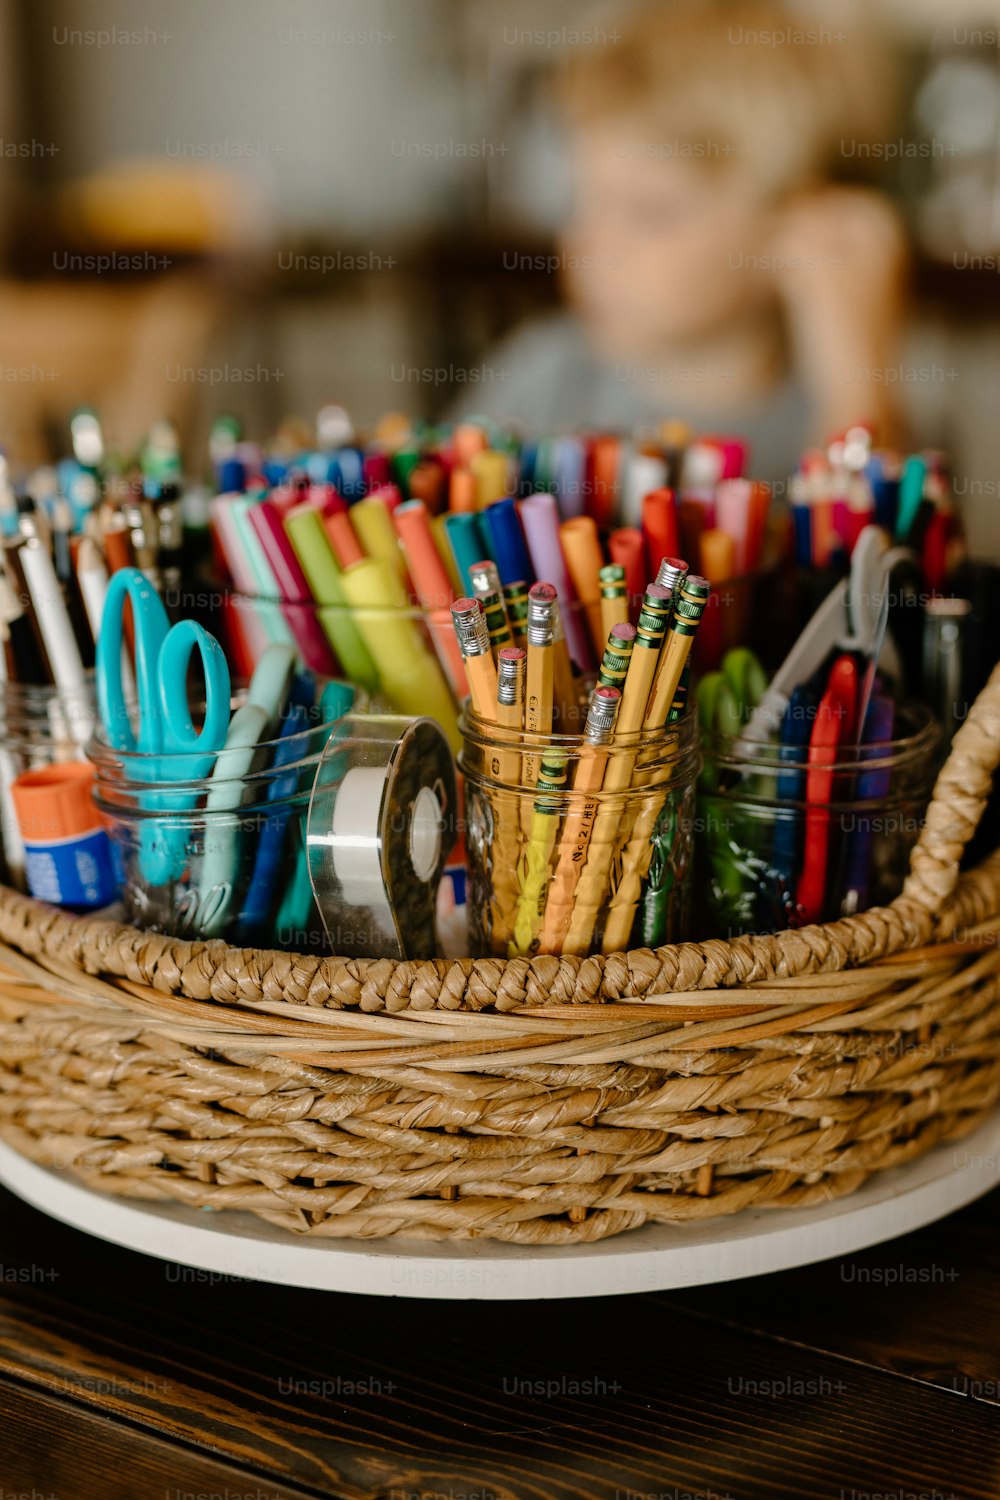 un panier rempli de stylos et de ciseaux de différentes couleurs